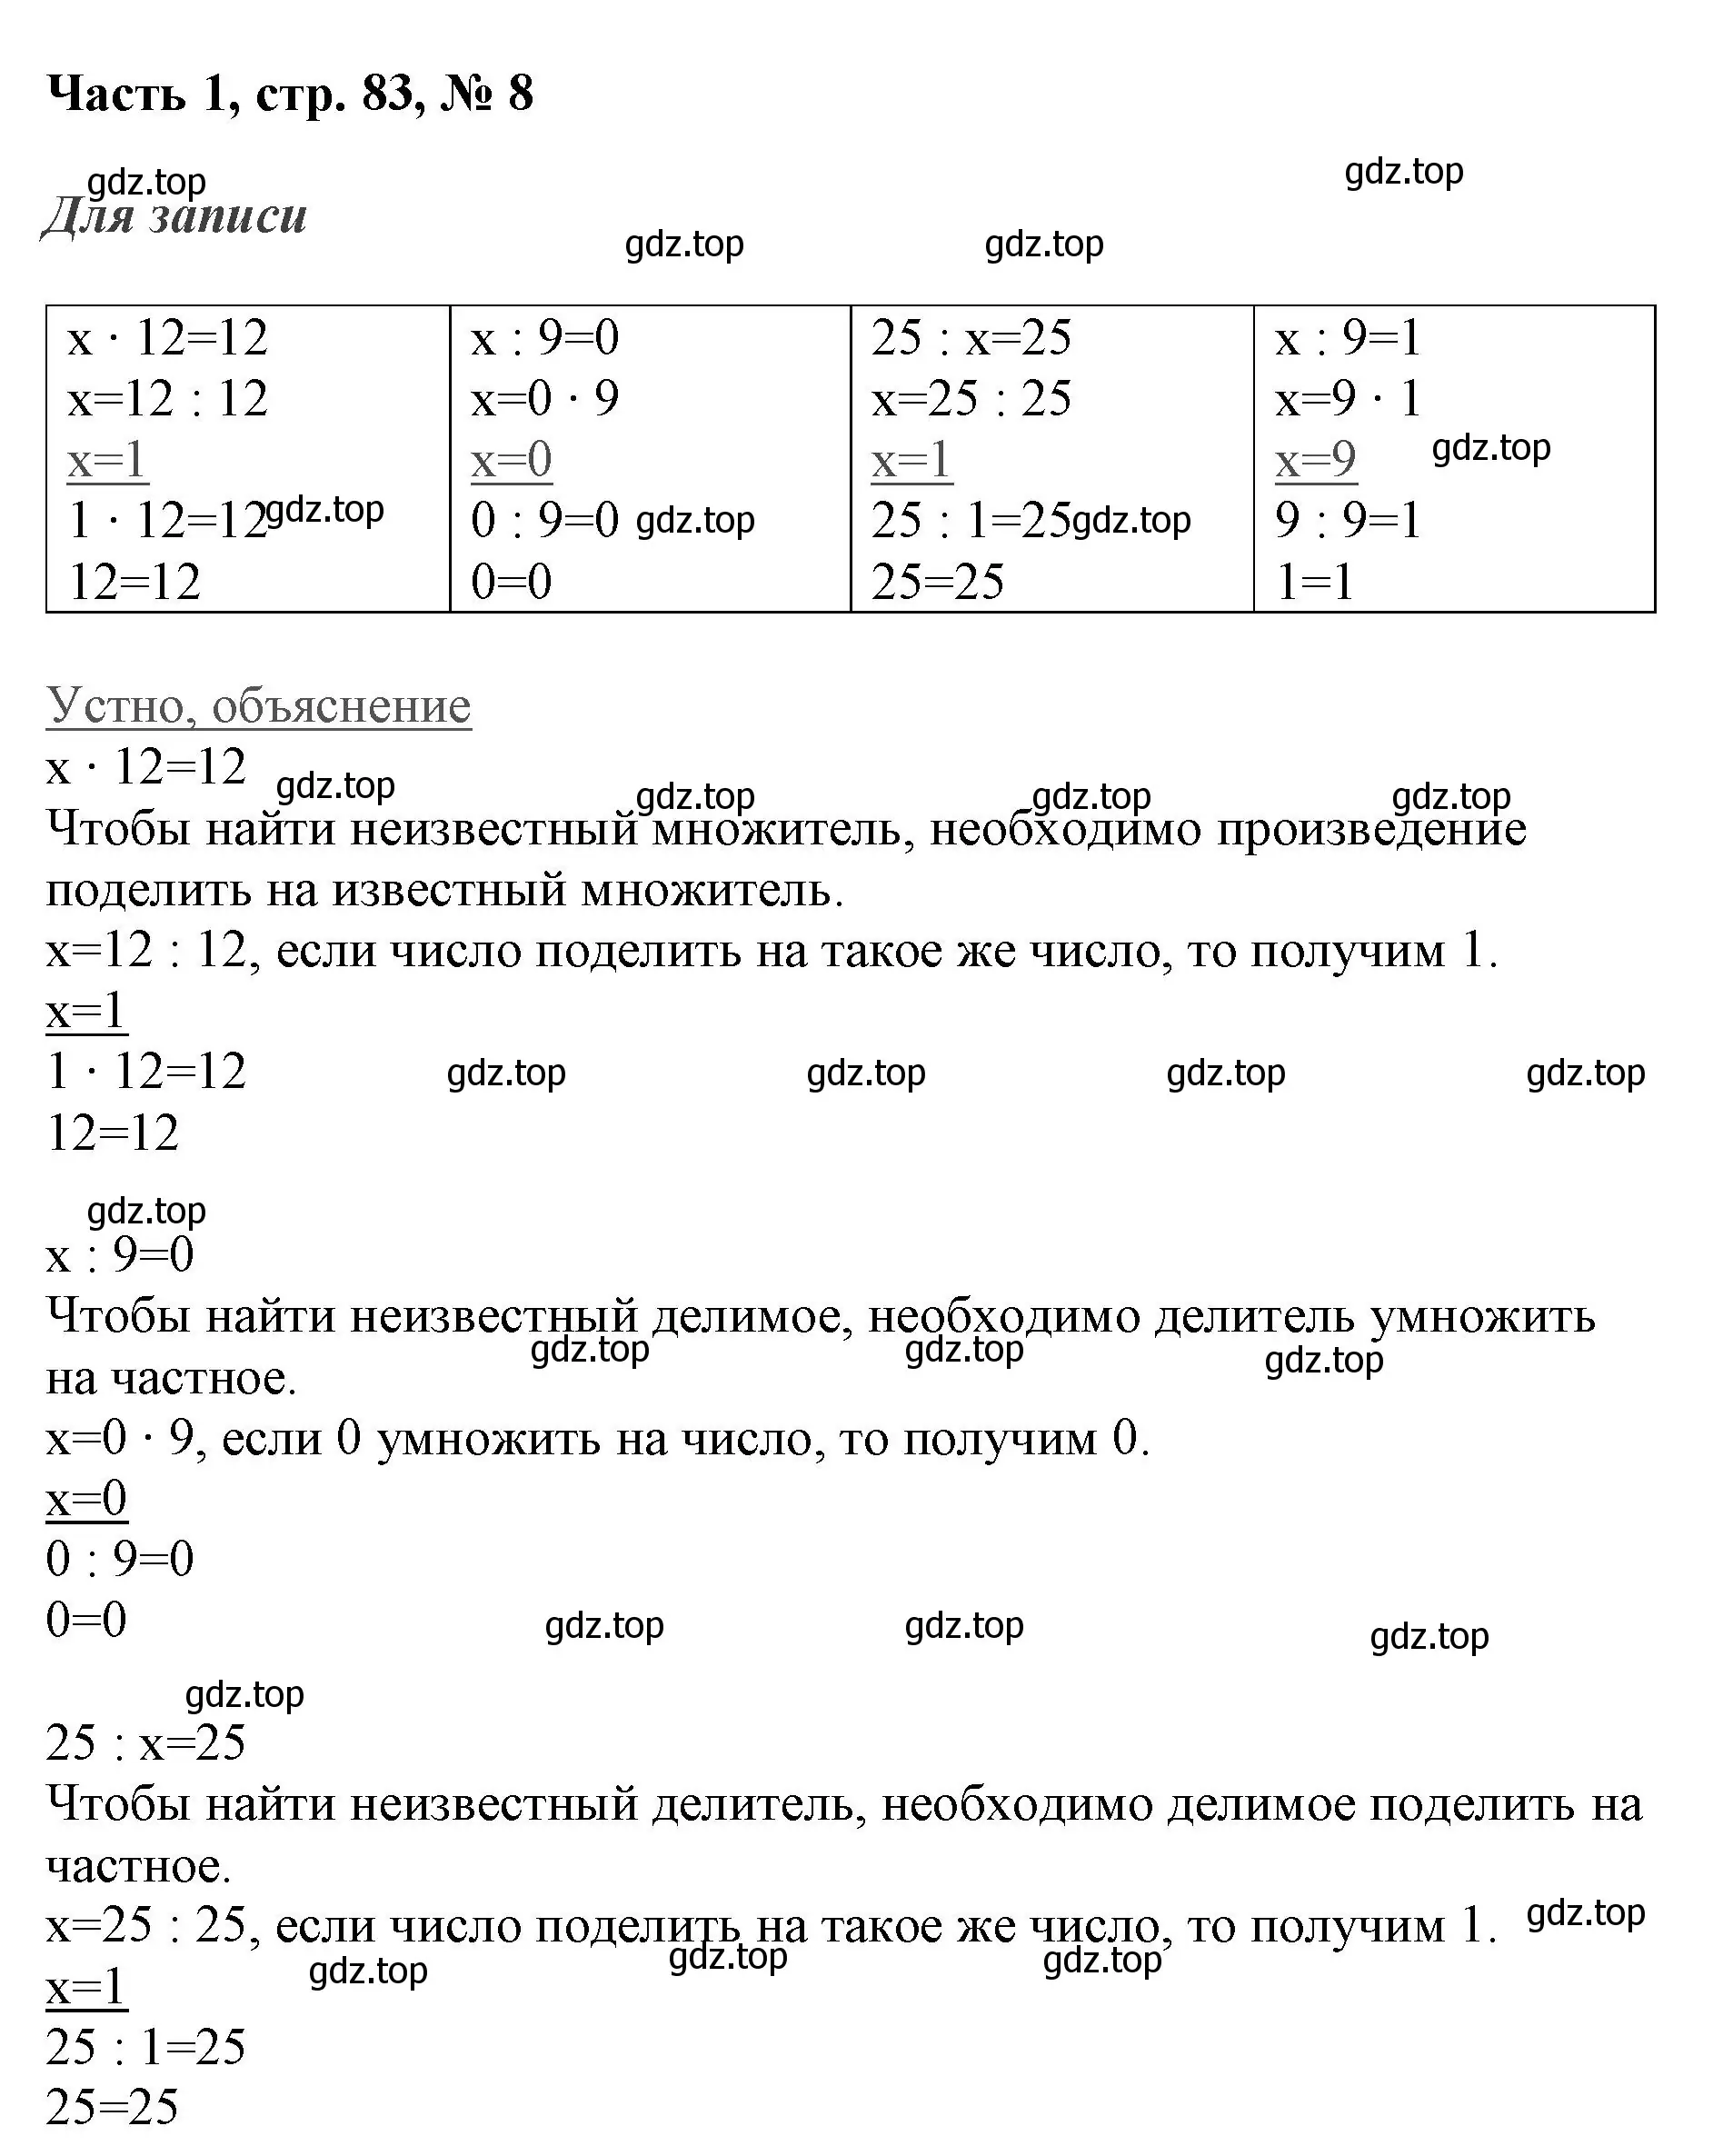 Решение номер 8 (страница 83) гдз по математике 3 класс Моро, Бантова, учебник 1 часть